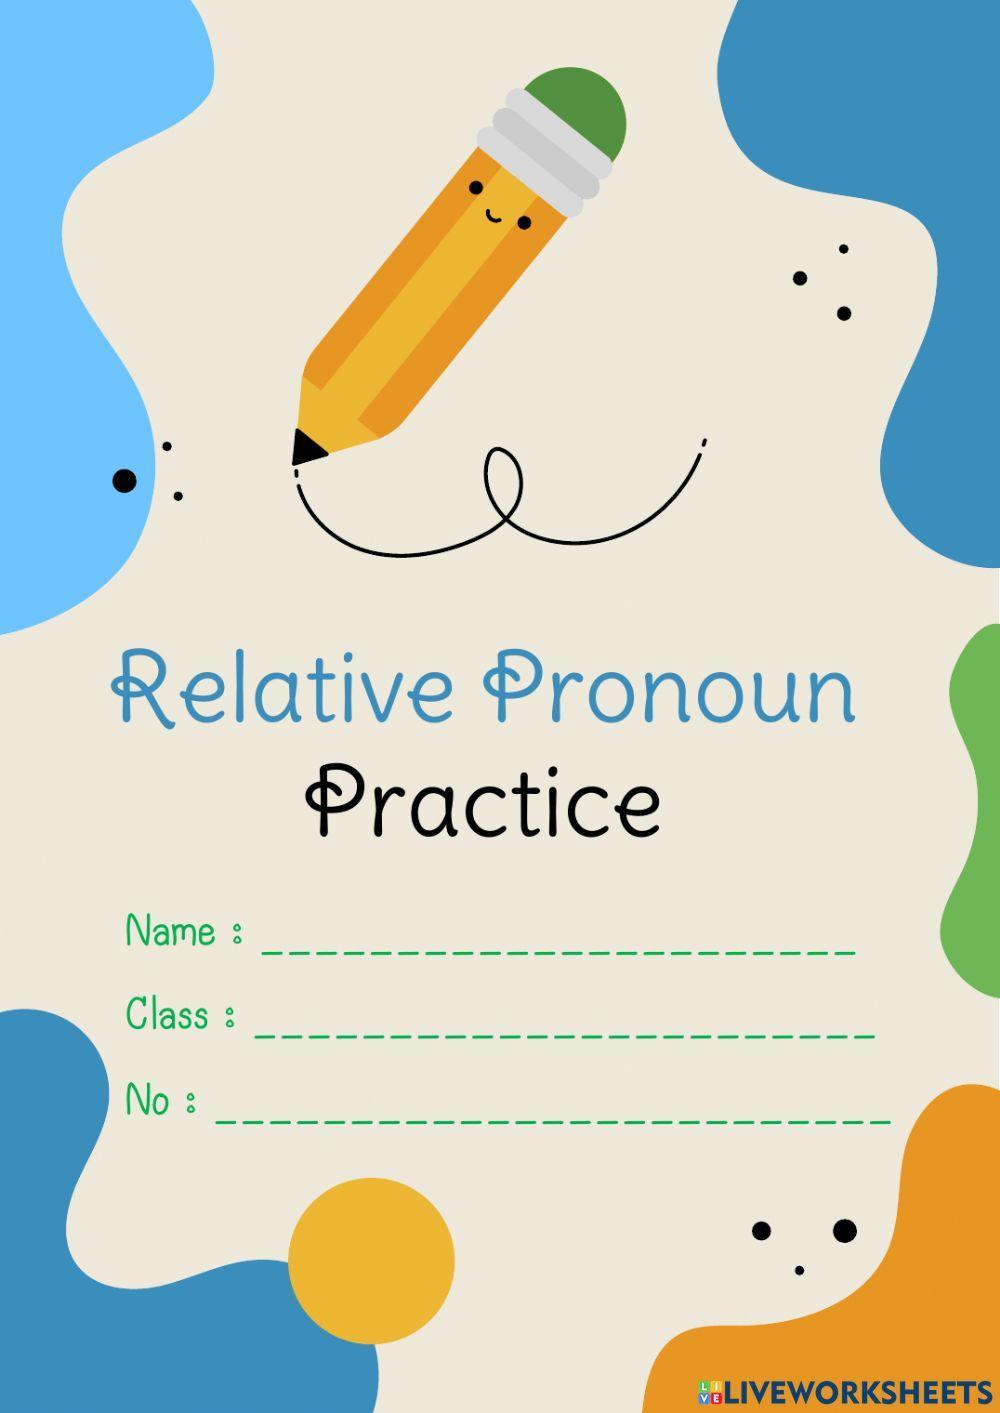 Relative Pronoun